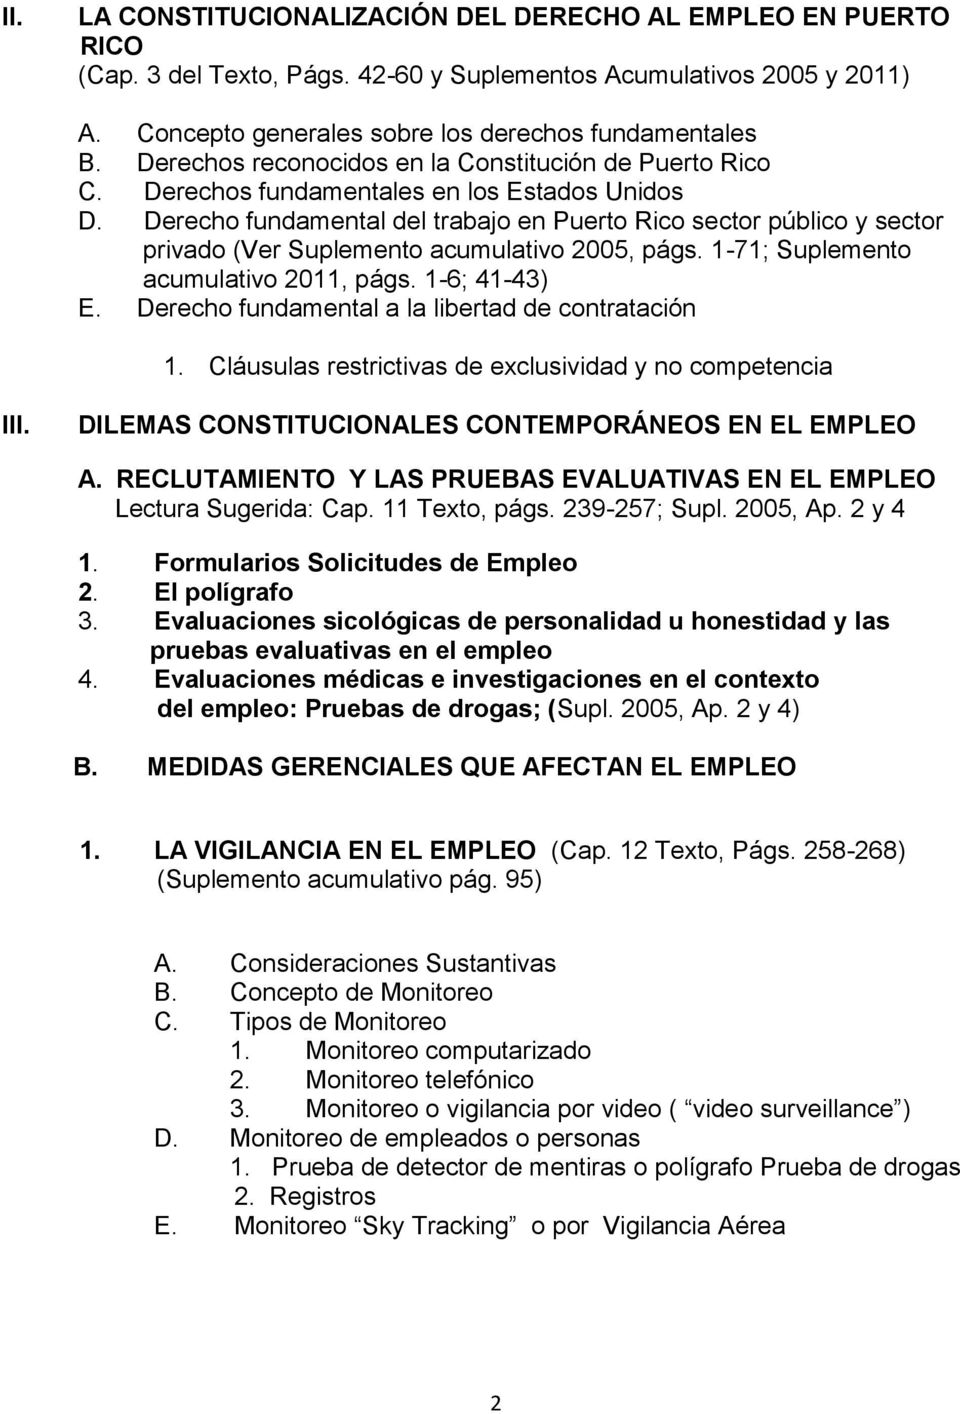 Derecho fundamental del trabajo en Puerto Rico sector público y sector privado (Ver Suplemento acumulativo 2005, págs. 1-71; Suplemento acumulativo 2011, págs. 1-6; 41-43) E.